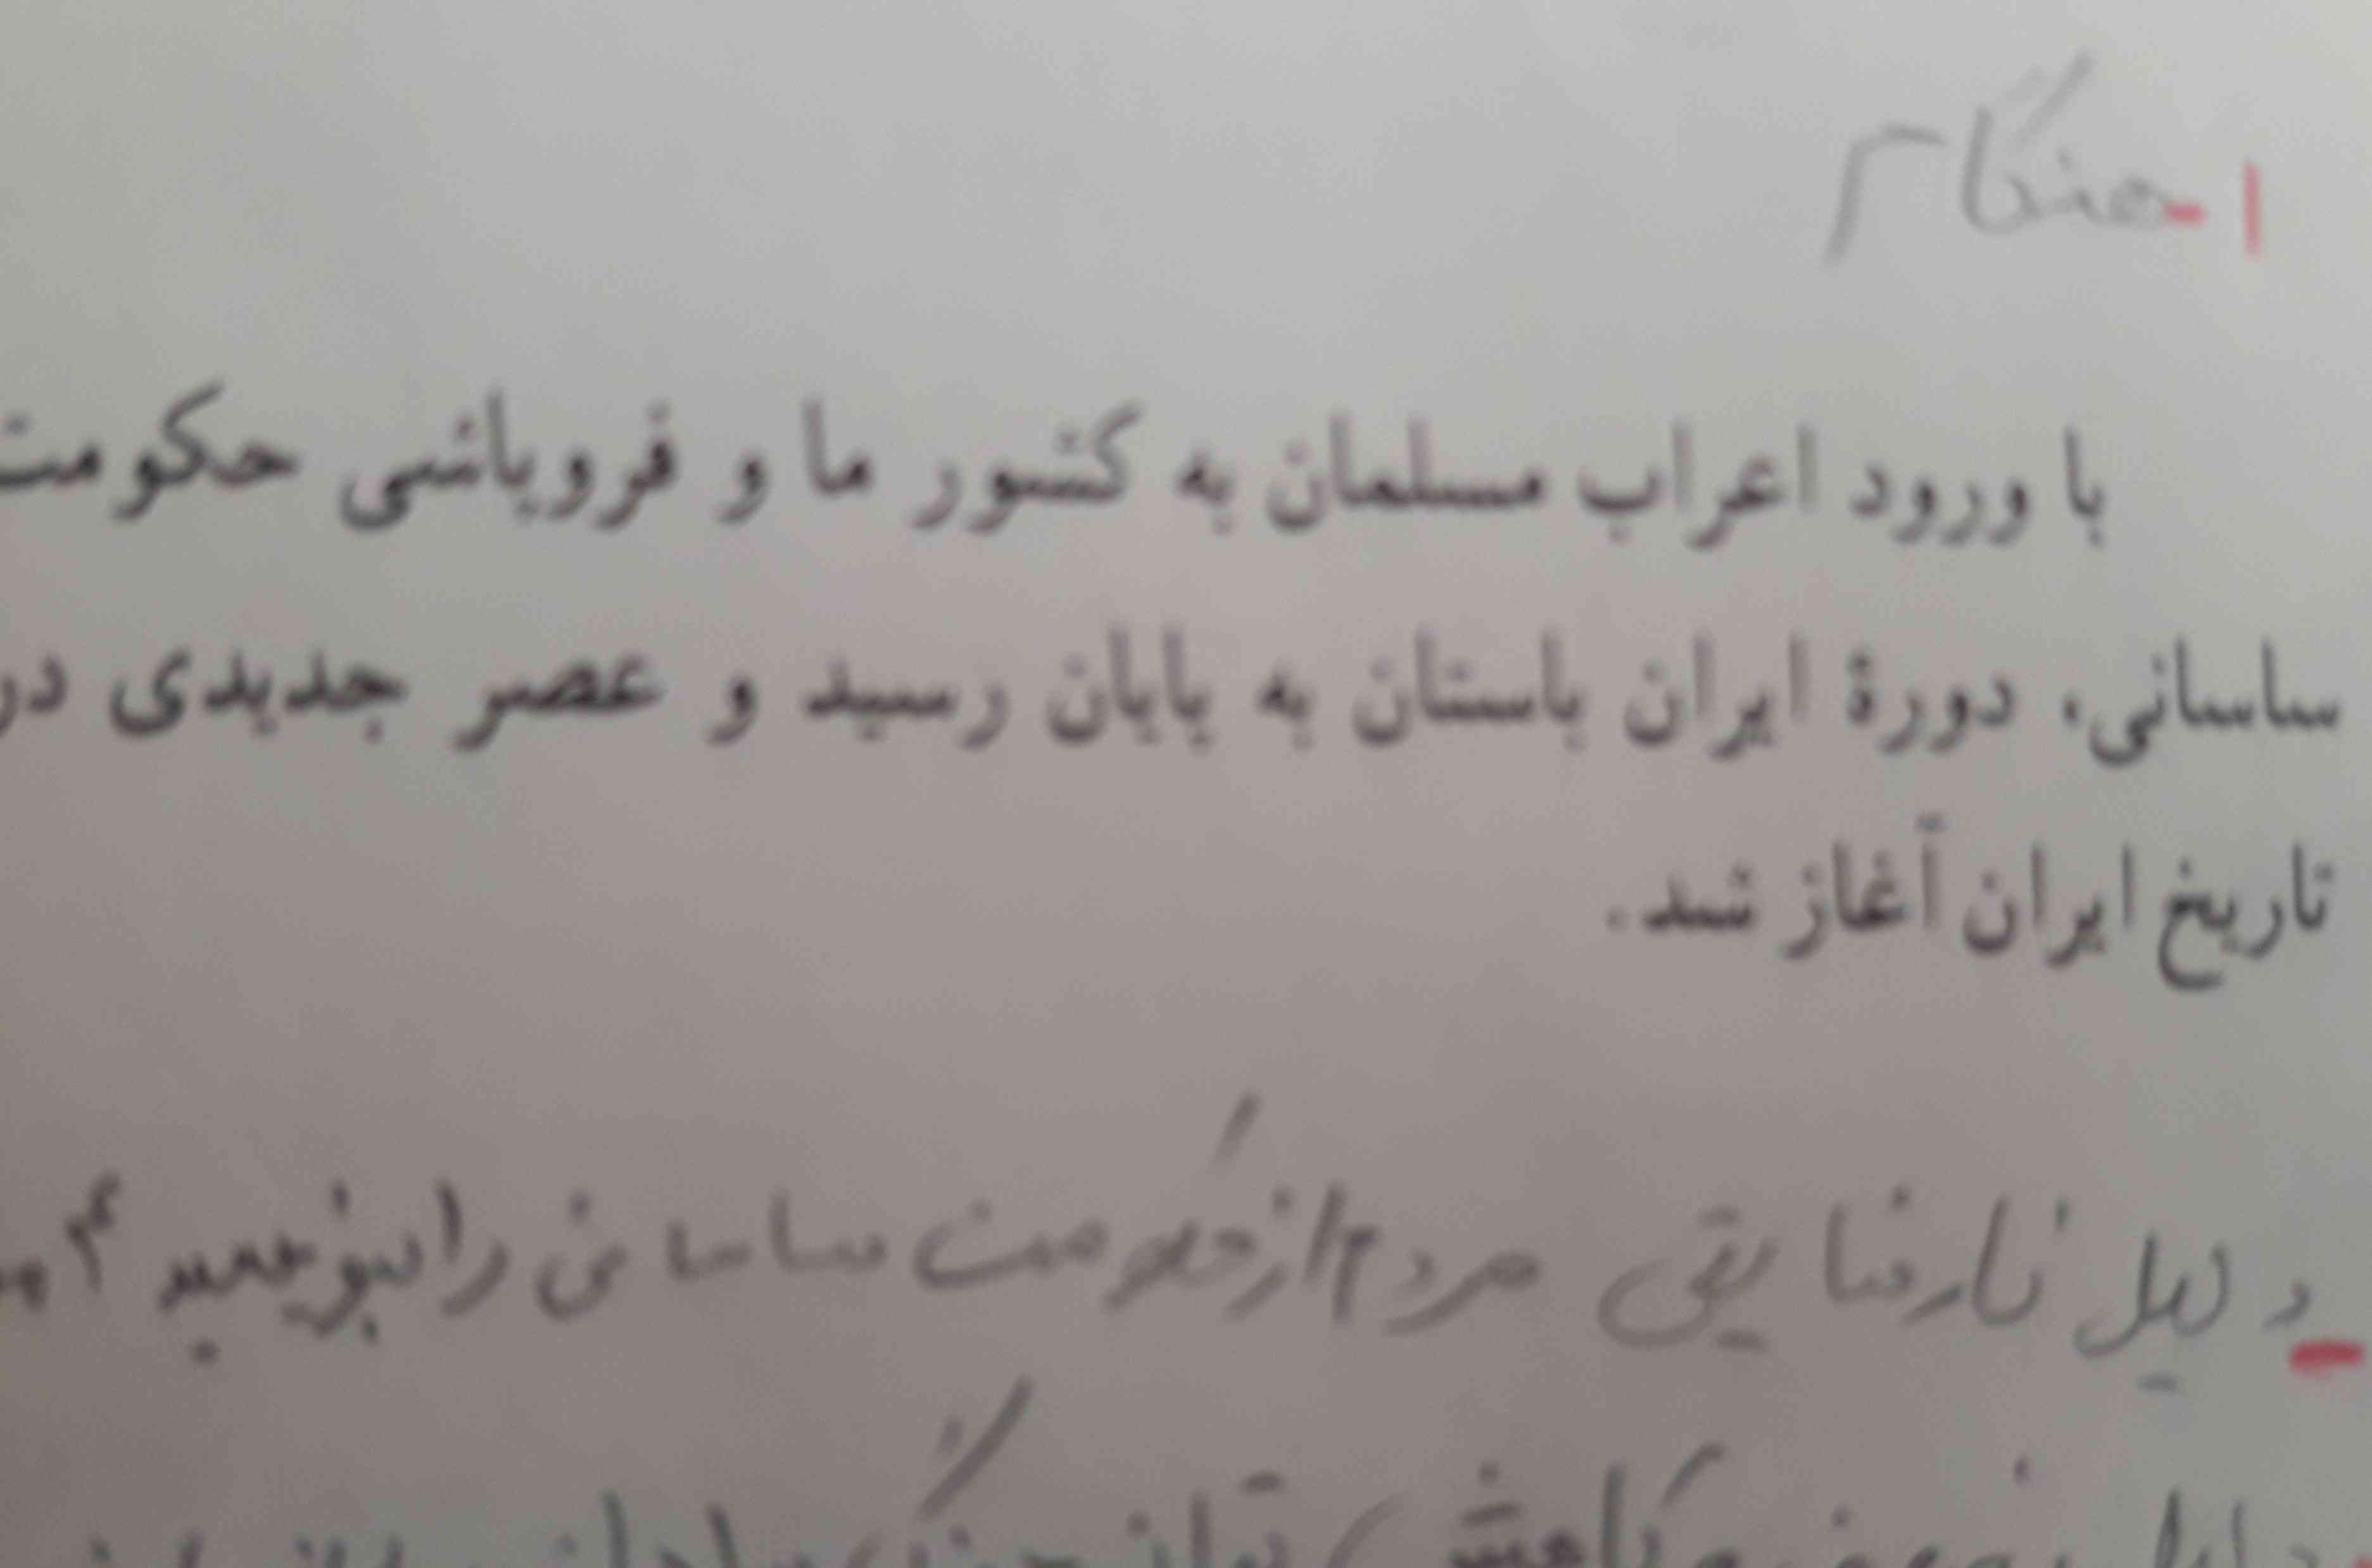 دلیل نارضایتی مردم از حکومت ساسانی را بنویسید
